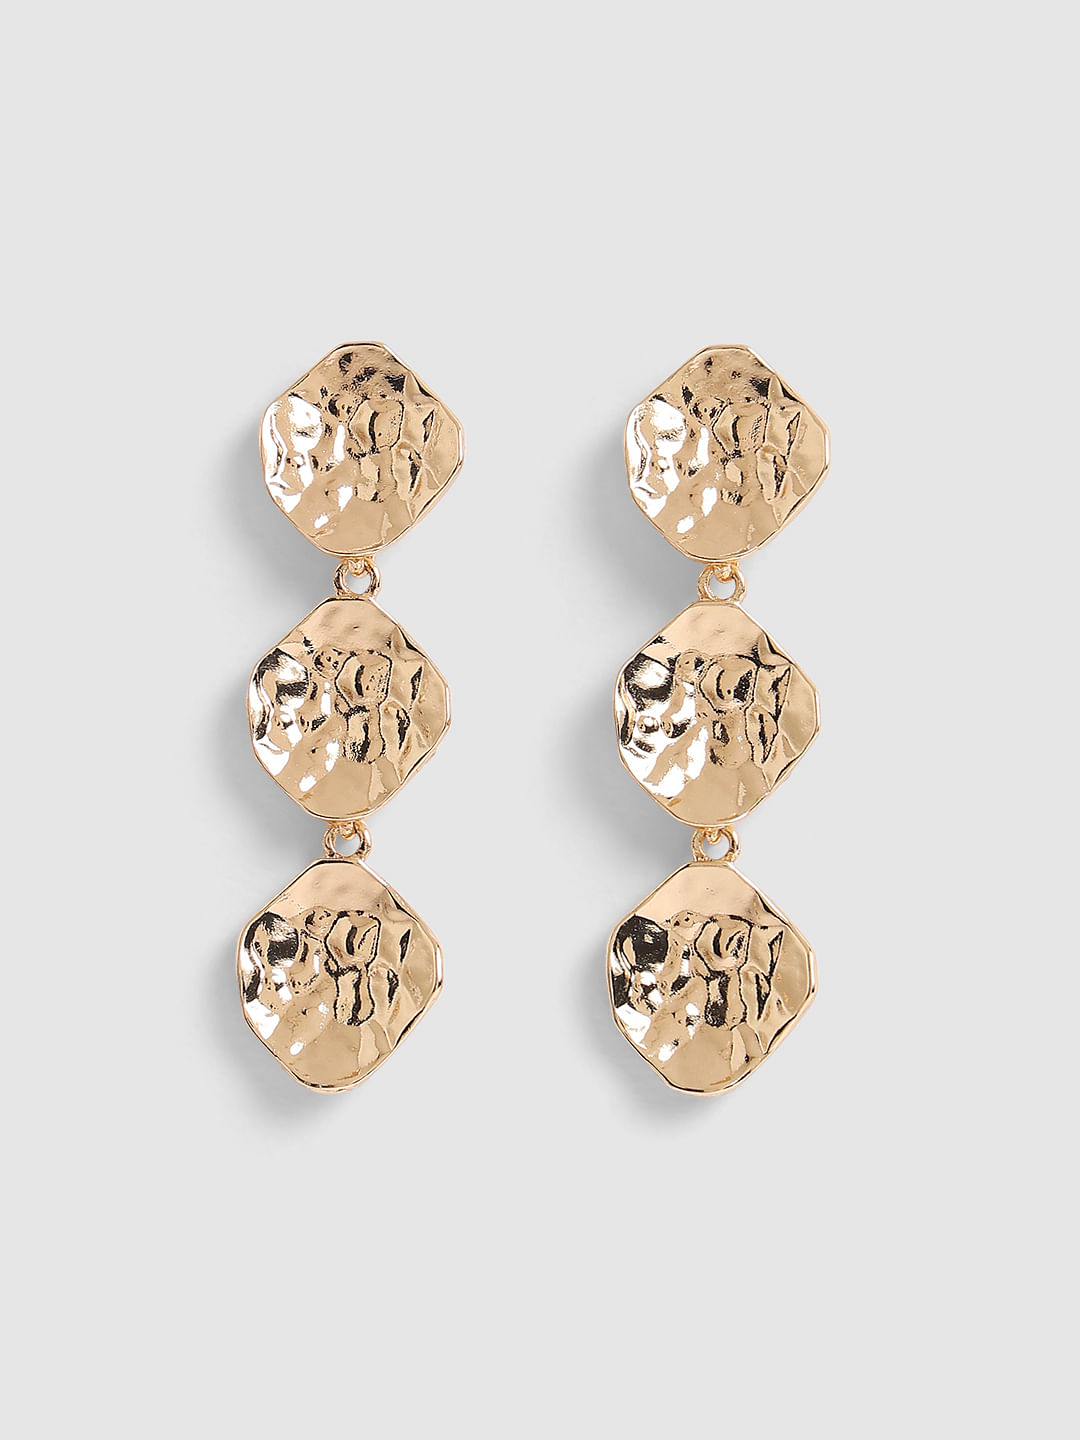 Royal Bling Gold Metal Earrings for Women  Crunchy Fashion Amazonin  Fashion